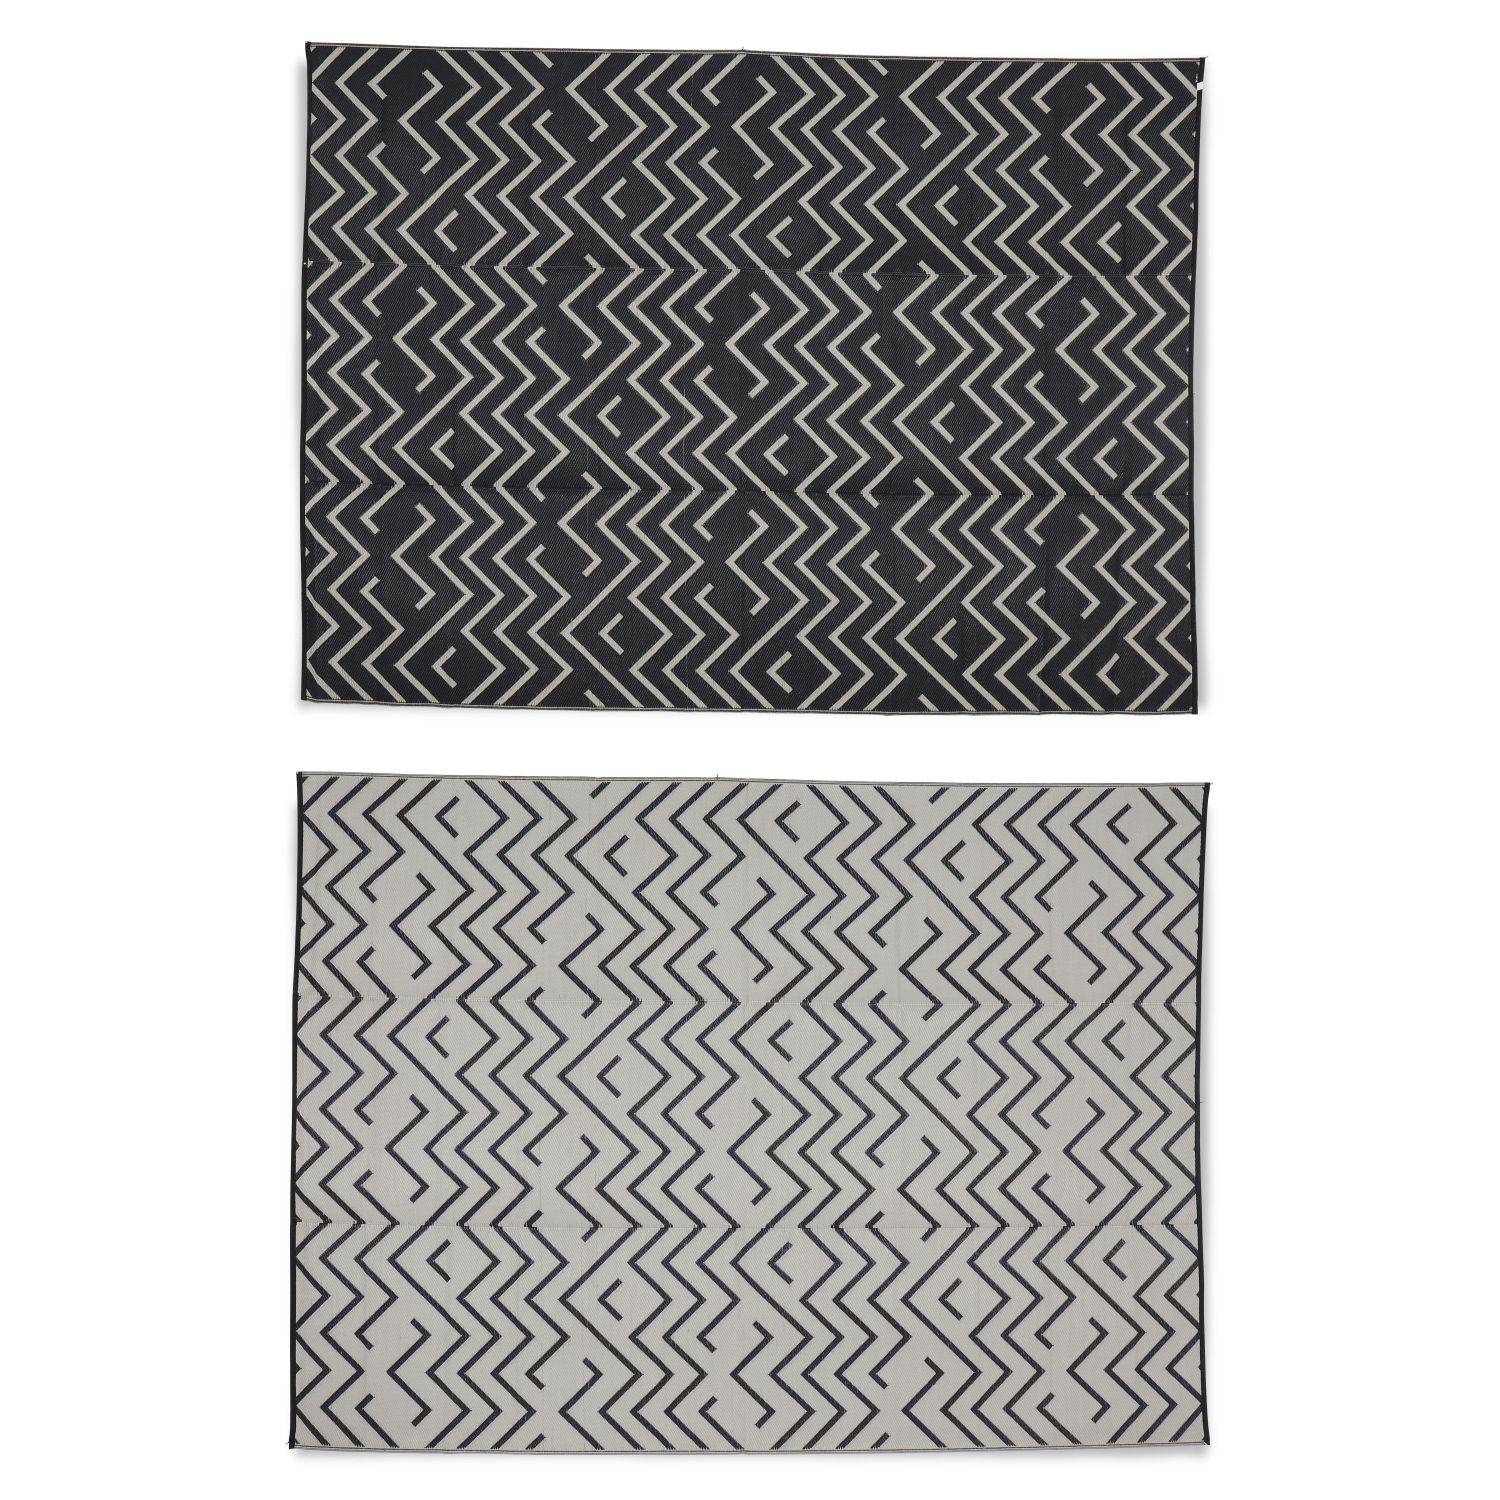 Buitentapijt 270x360cm SYDNEY - Rechthoekig, golvenmotief zwart/beige, jacquard, omkeerbaar, binnen/buiten Photo2